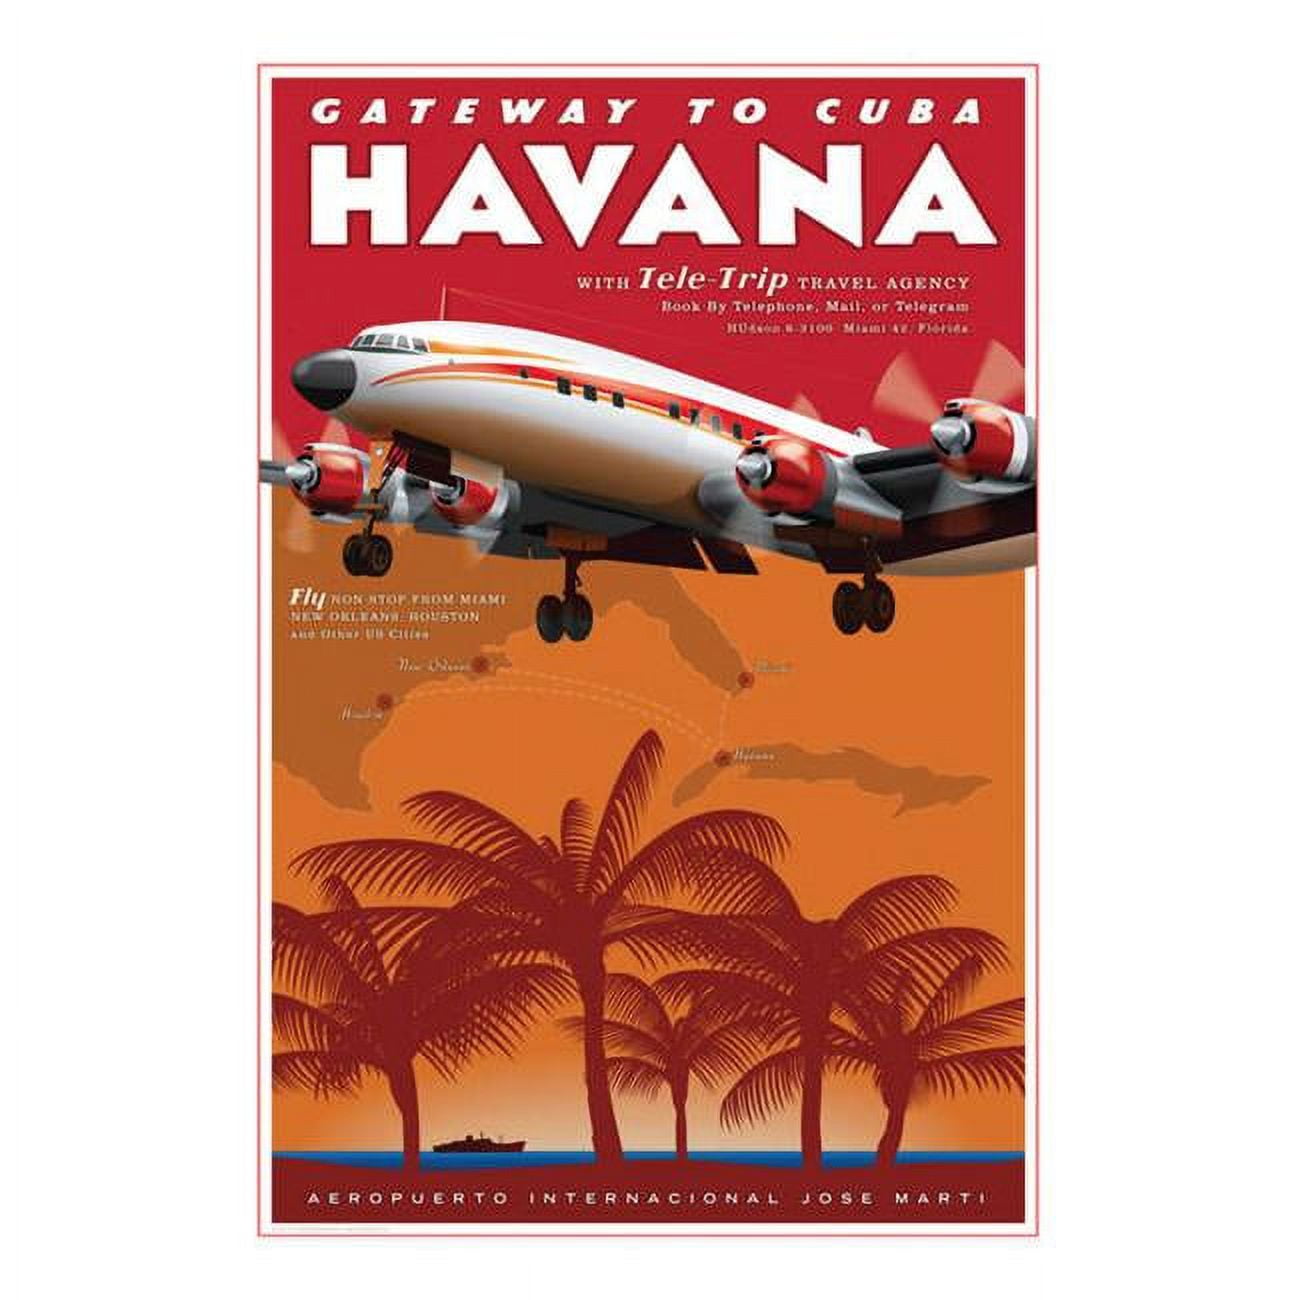 Ja032 14 X 20 In. Havana Airport Travel Poster